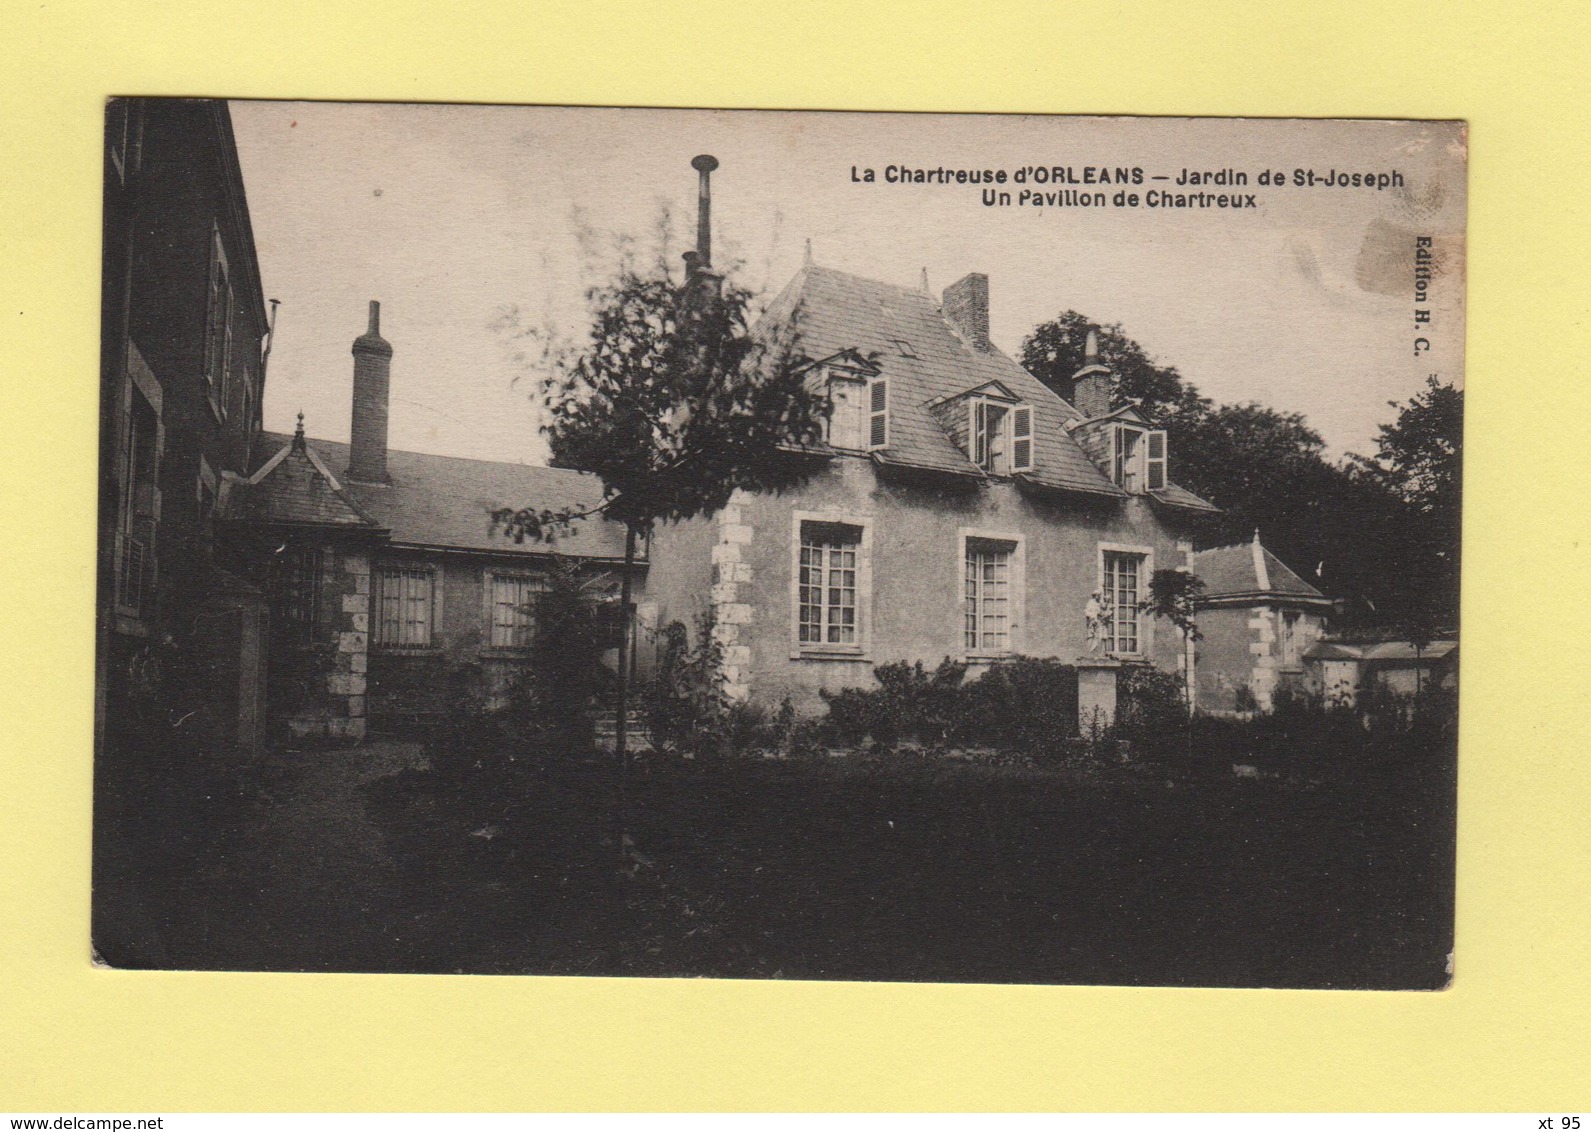 Hopital Auxiliaire N°114 - Orleans Loiret - 8-10-1918 - Croix Rouge Francaise - Guerre De 1939-45